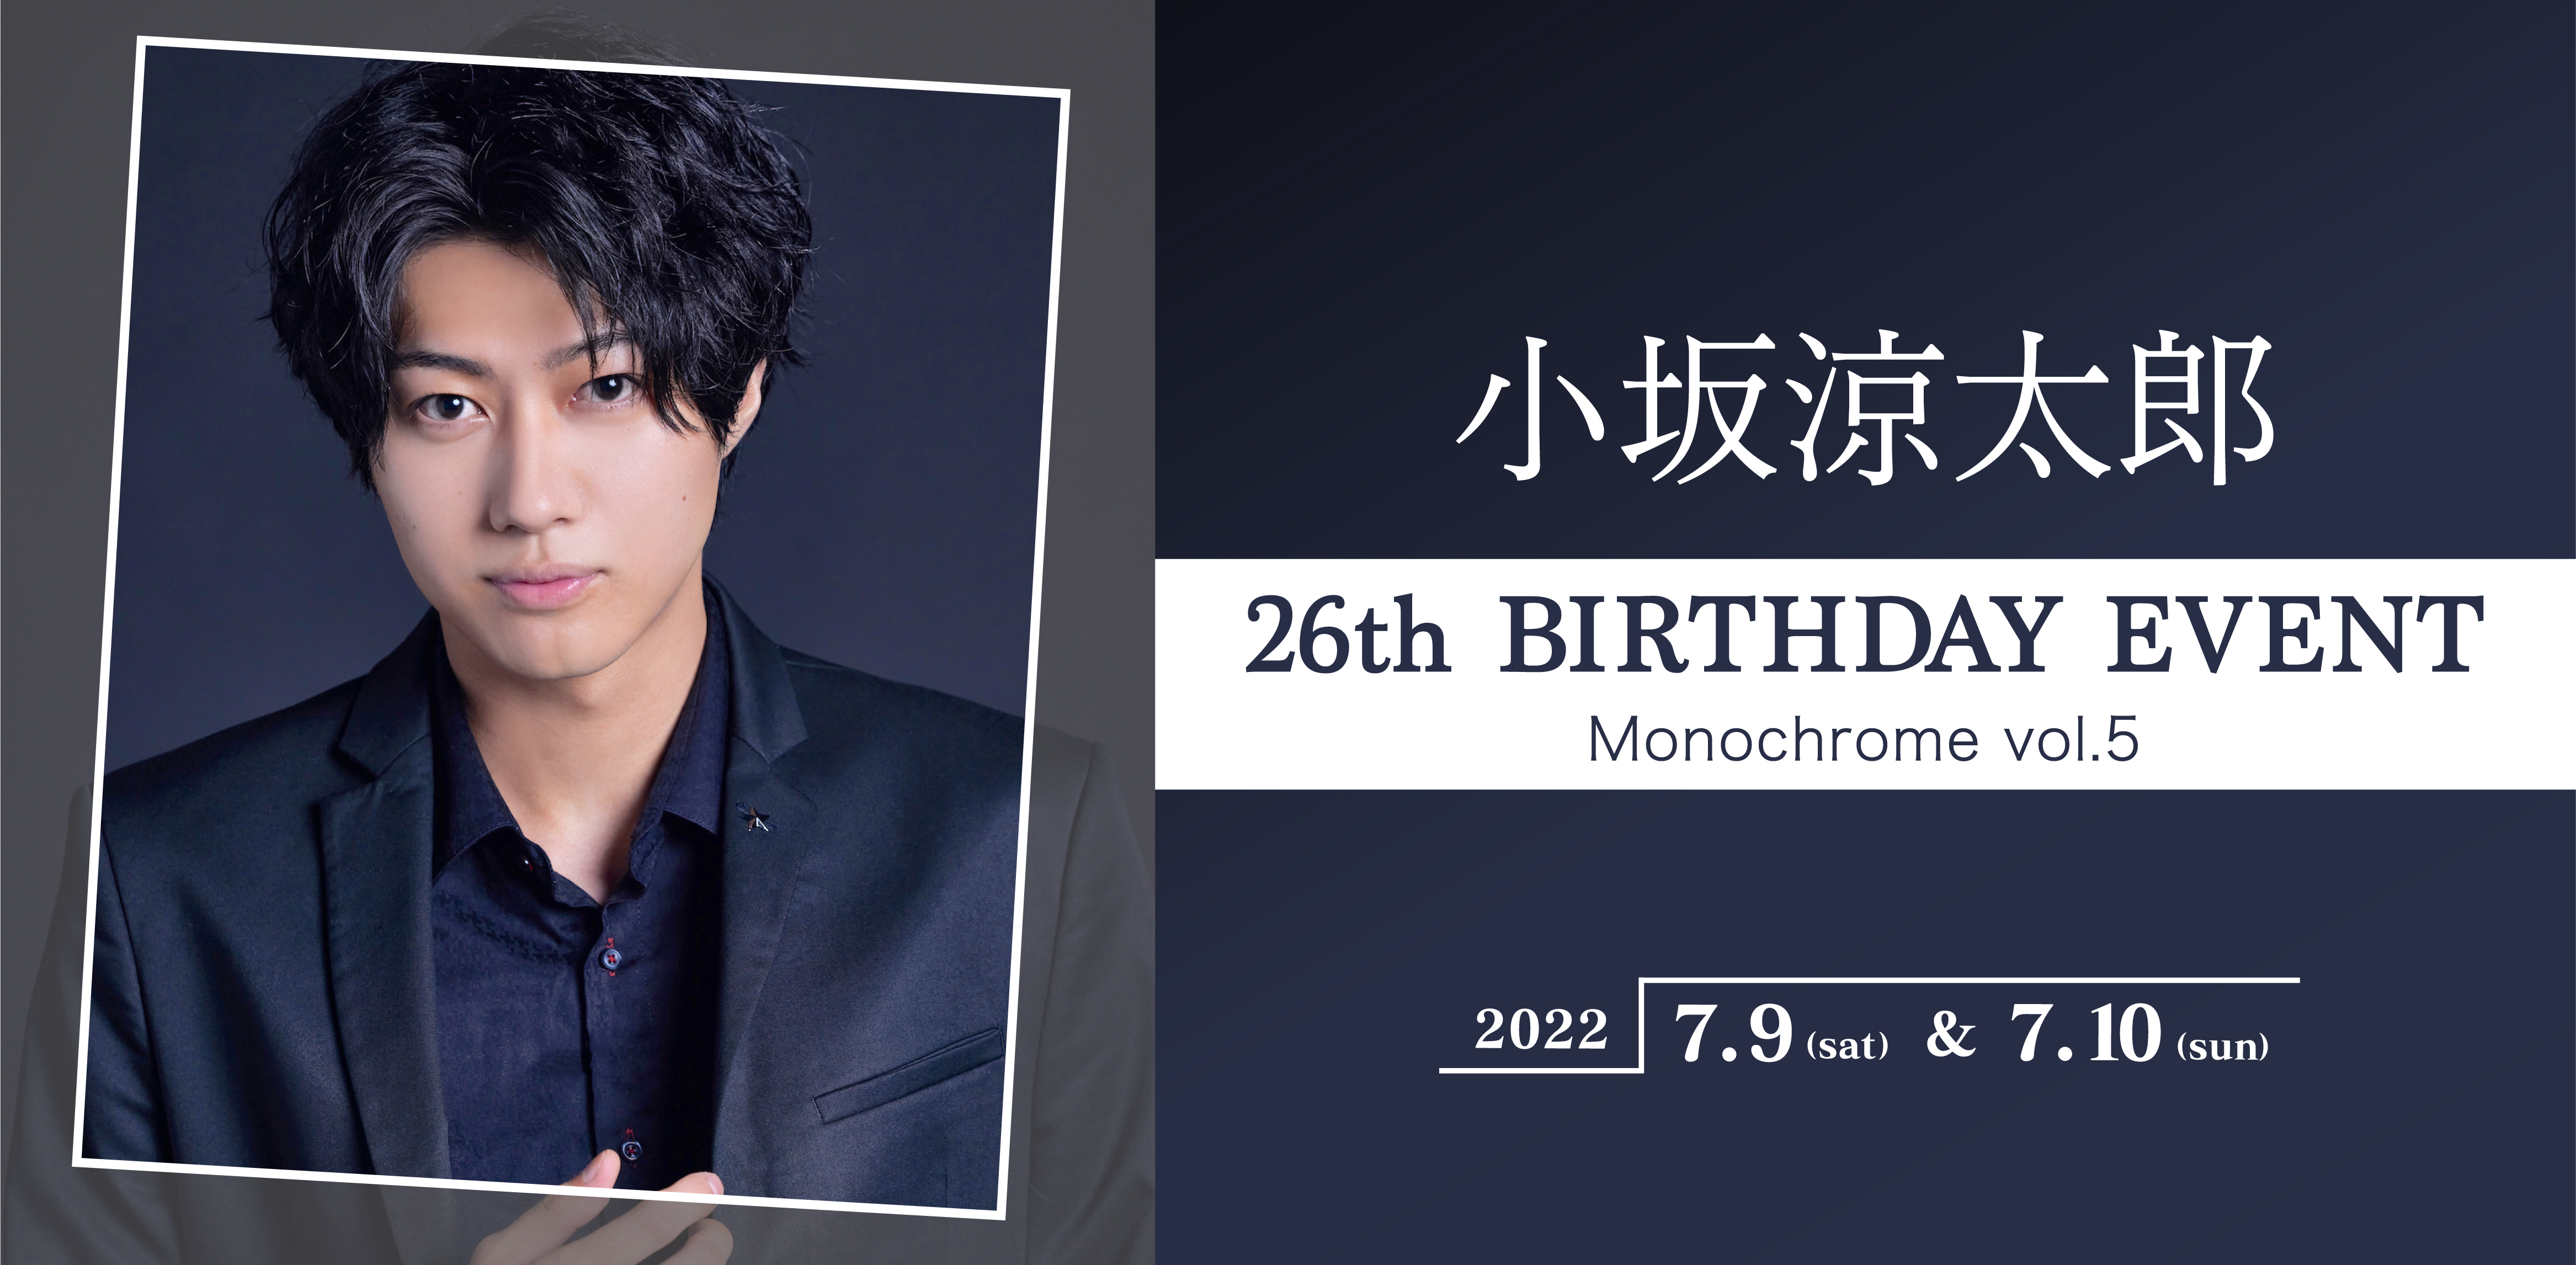 小坂涼太郎 26th BIRTHDAY EVENT「Monochrome vol.5」